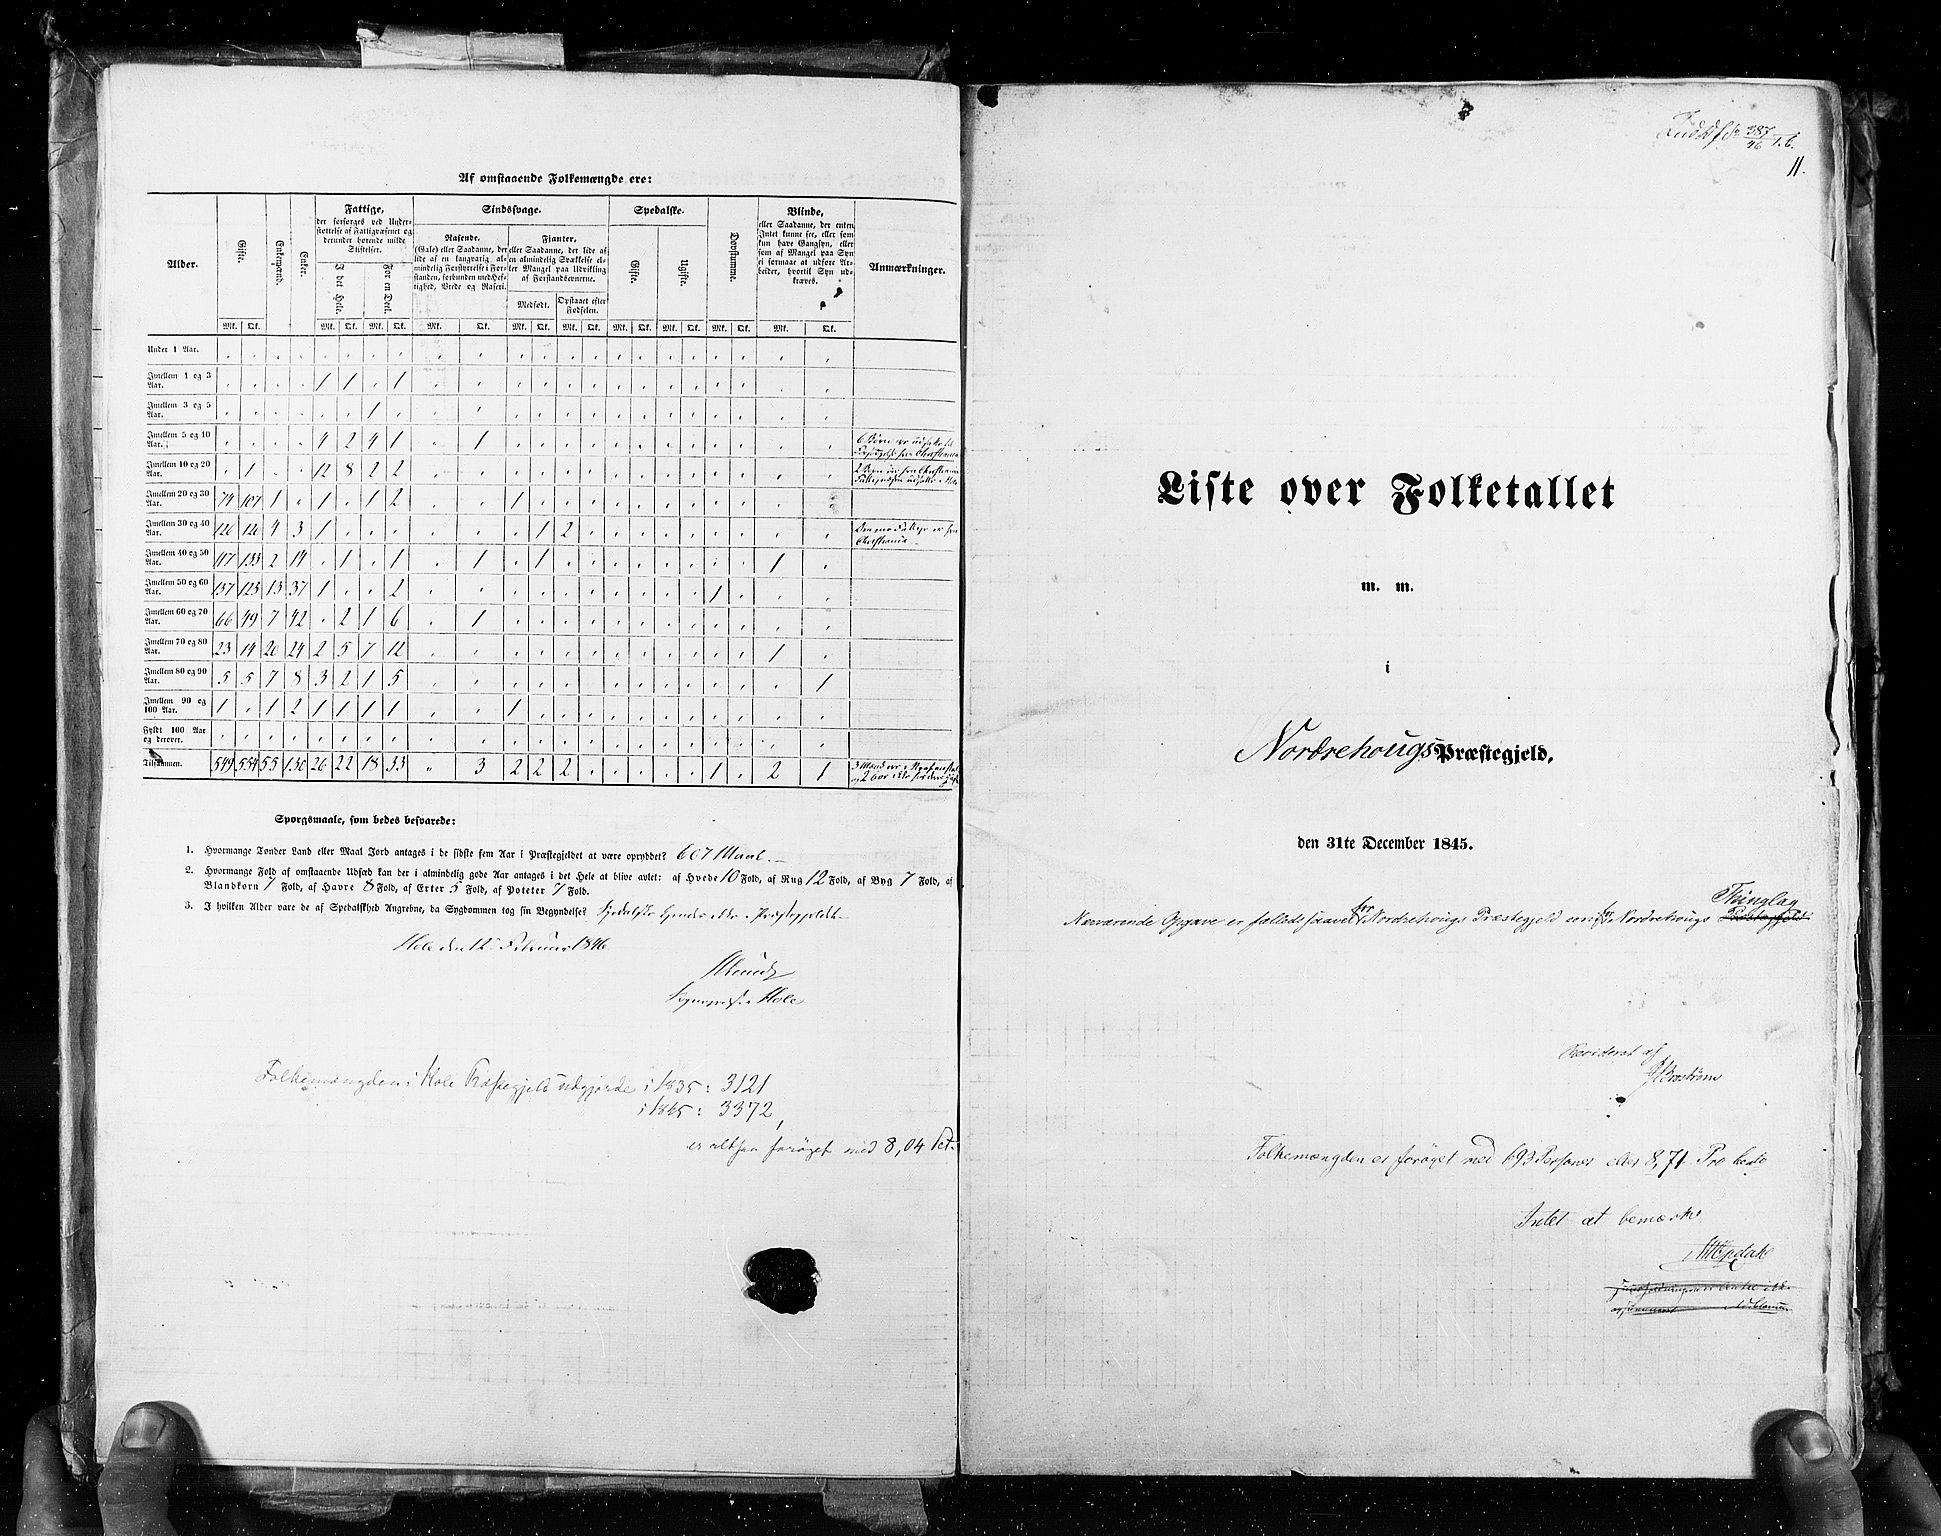 RA, Census 1845, vol. 4: Buskerud amt og Jarlsberg og Larvik amt, 1845, p. 11